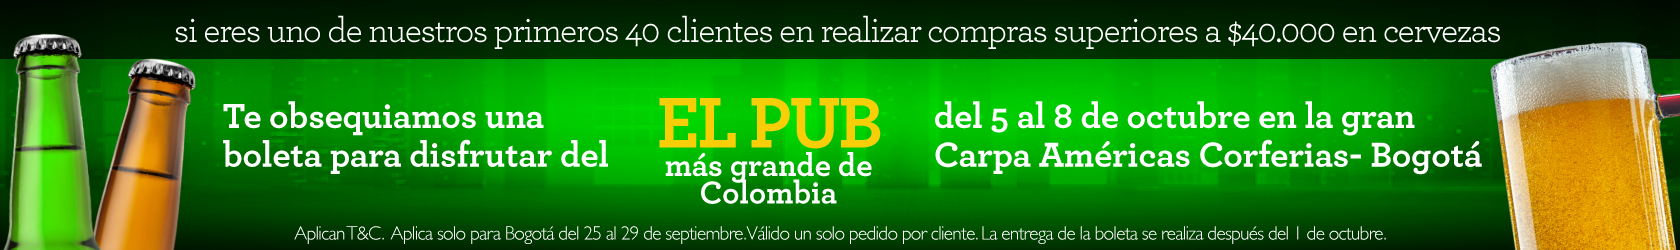 Pub más grande Bogotá Corferis